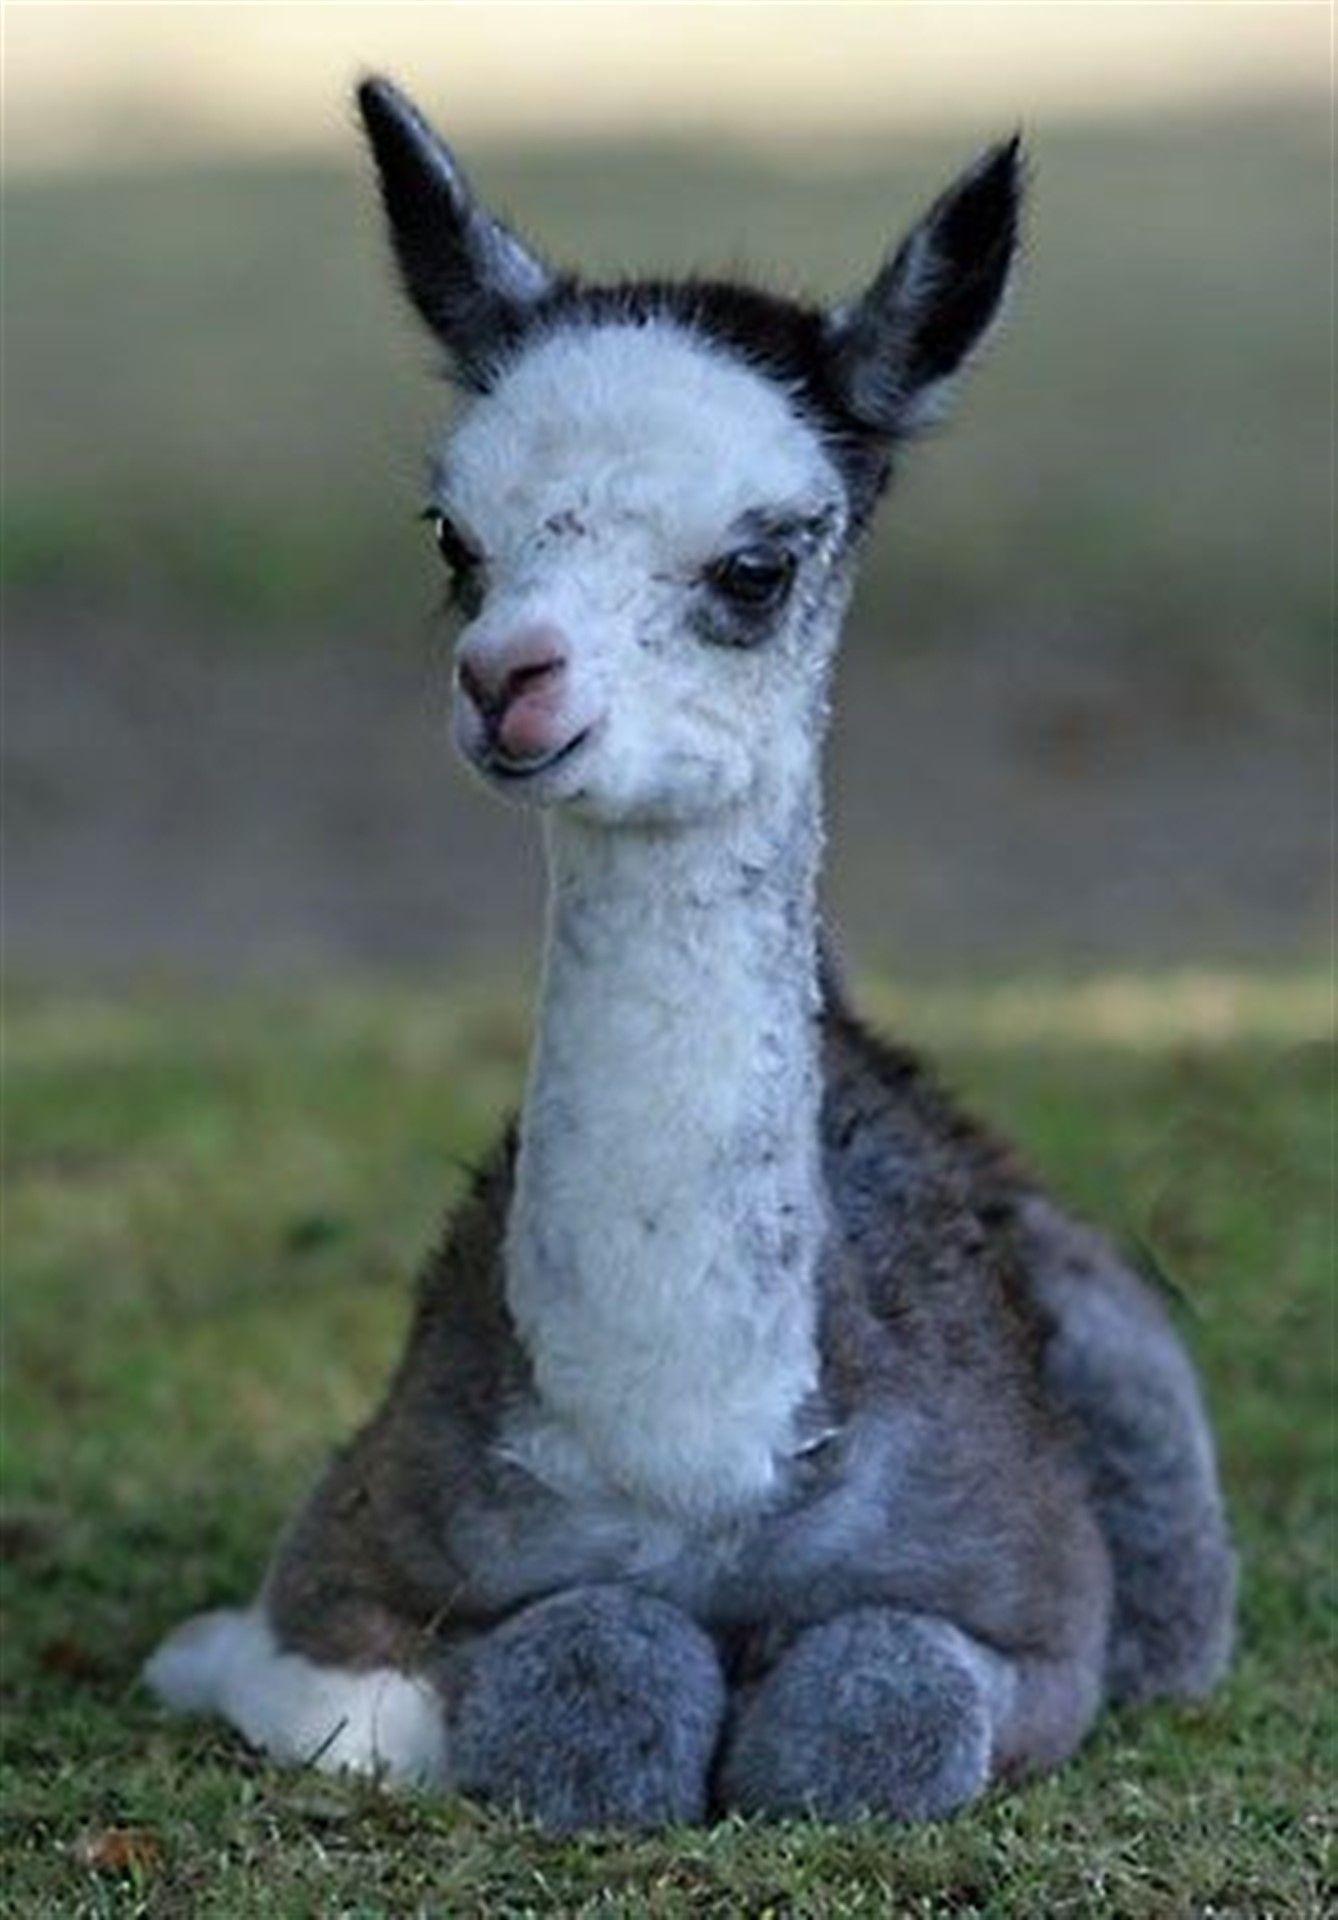 Baby llamas Wallpaper Baby llama Babies and Llamas. HD